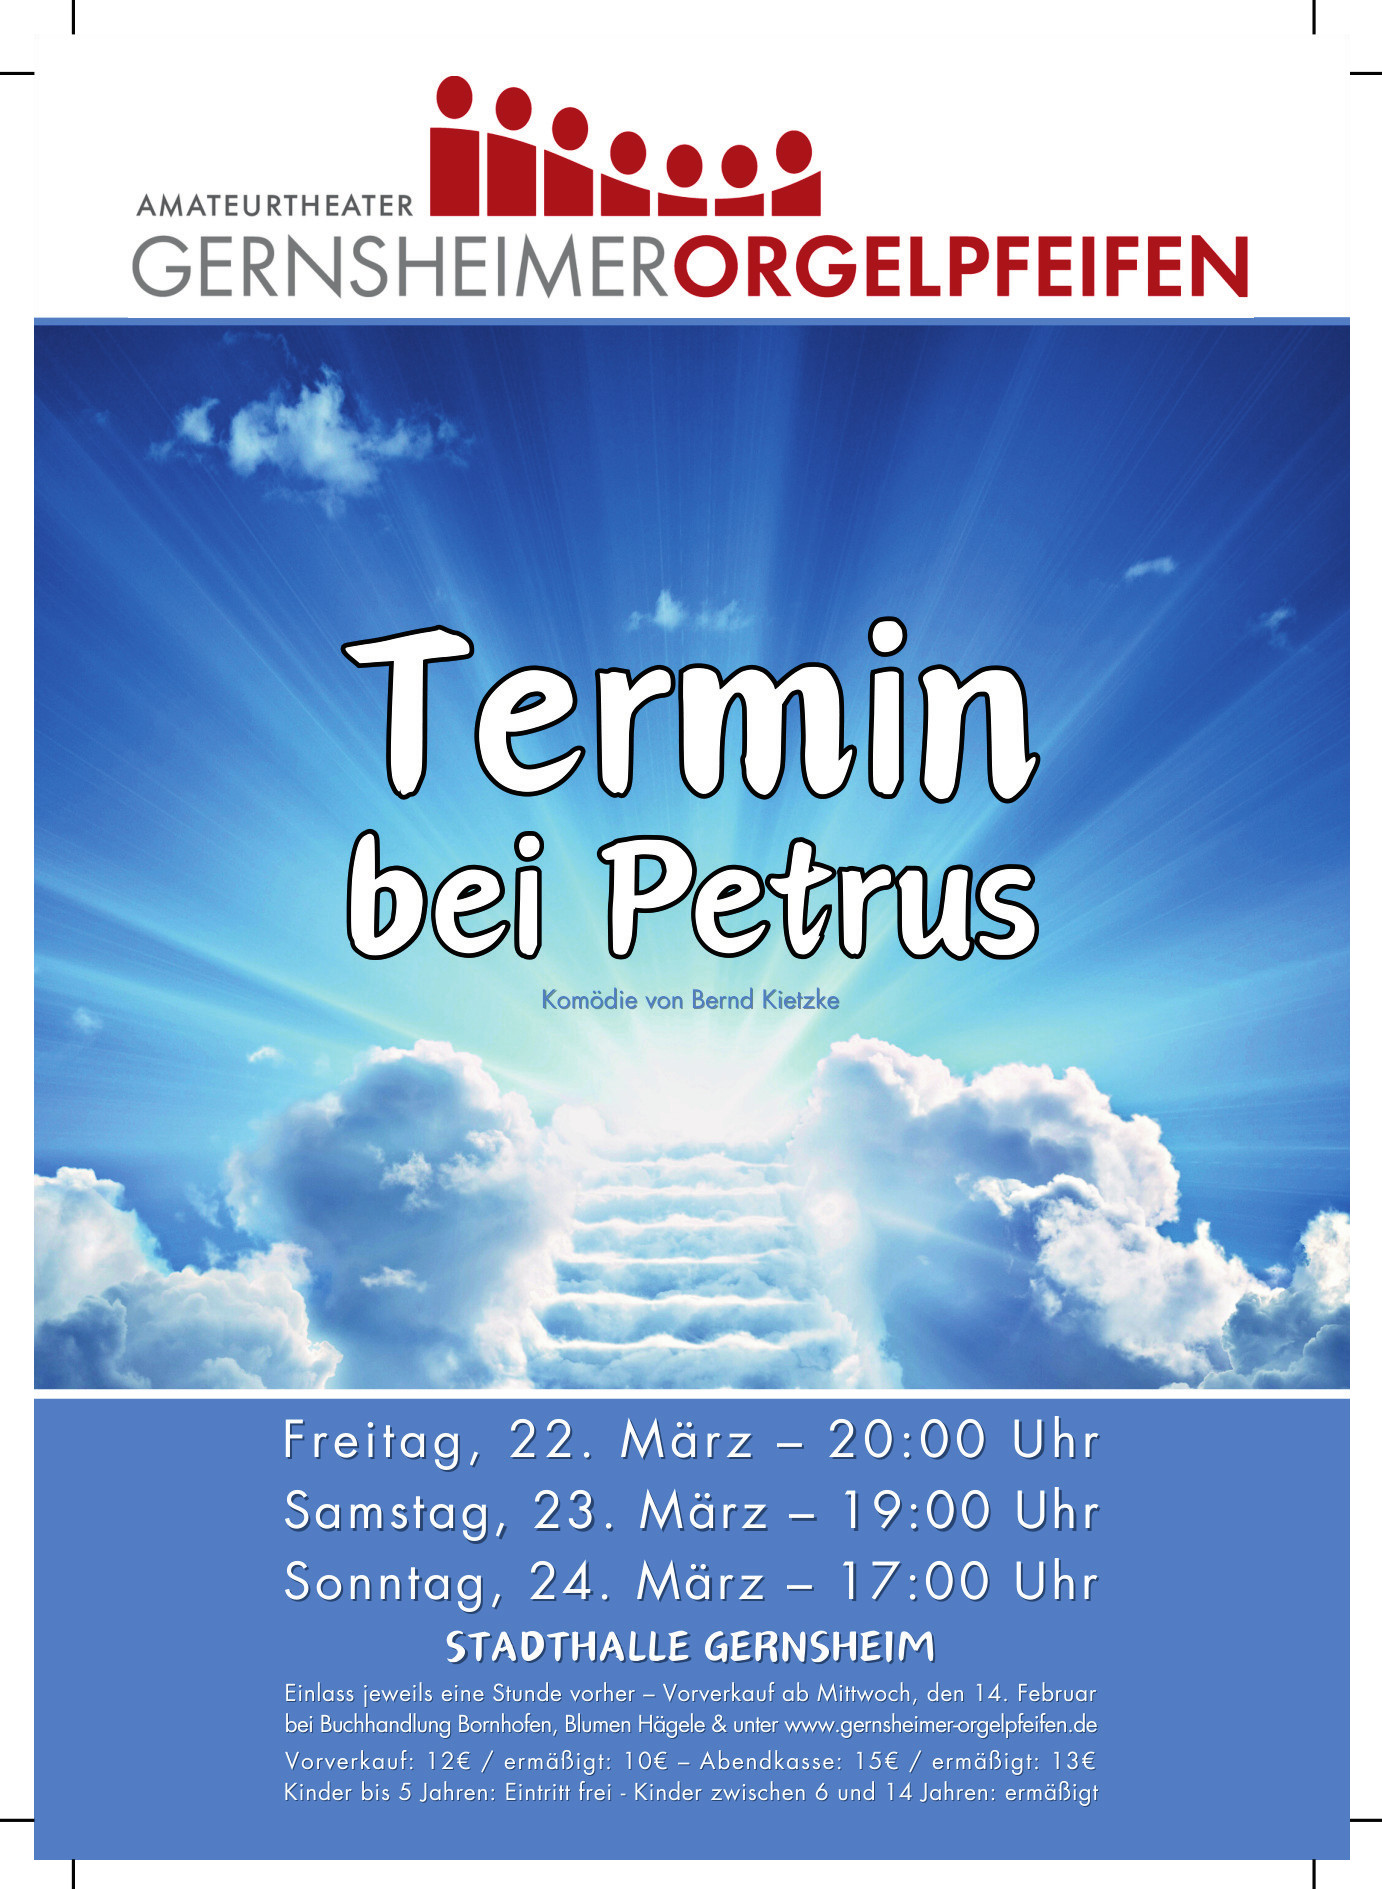 (c) Gernsheimer-orgelpfeifen.de